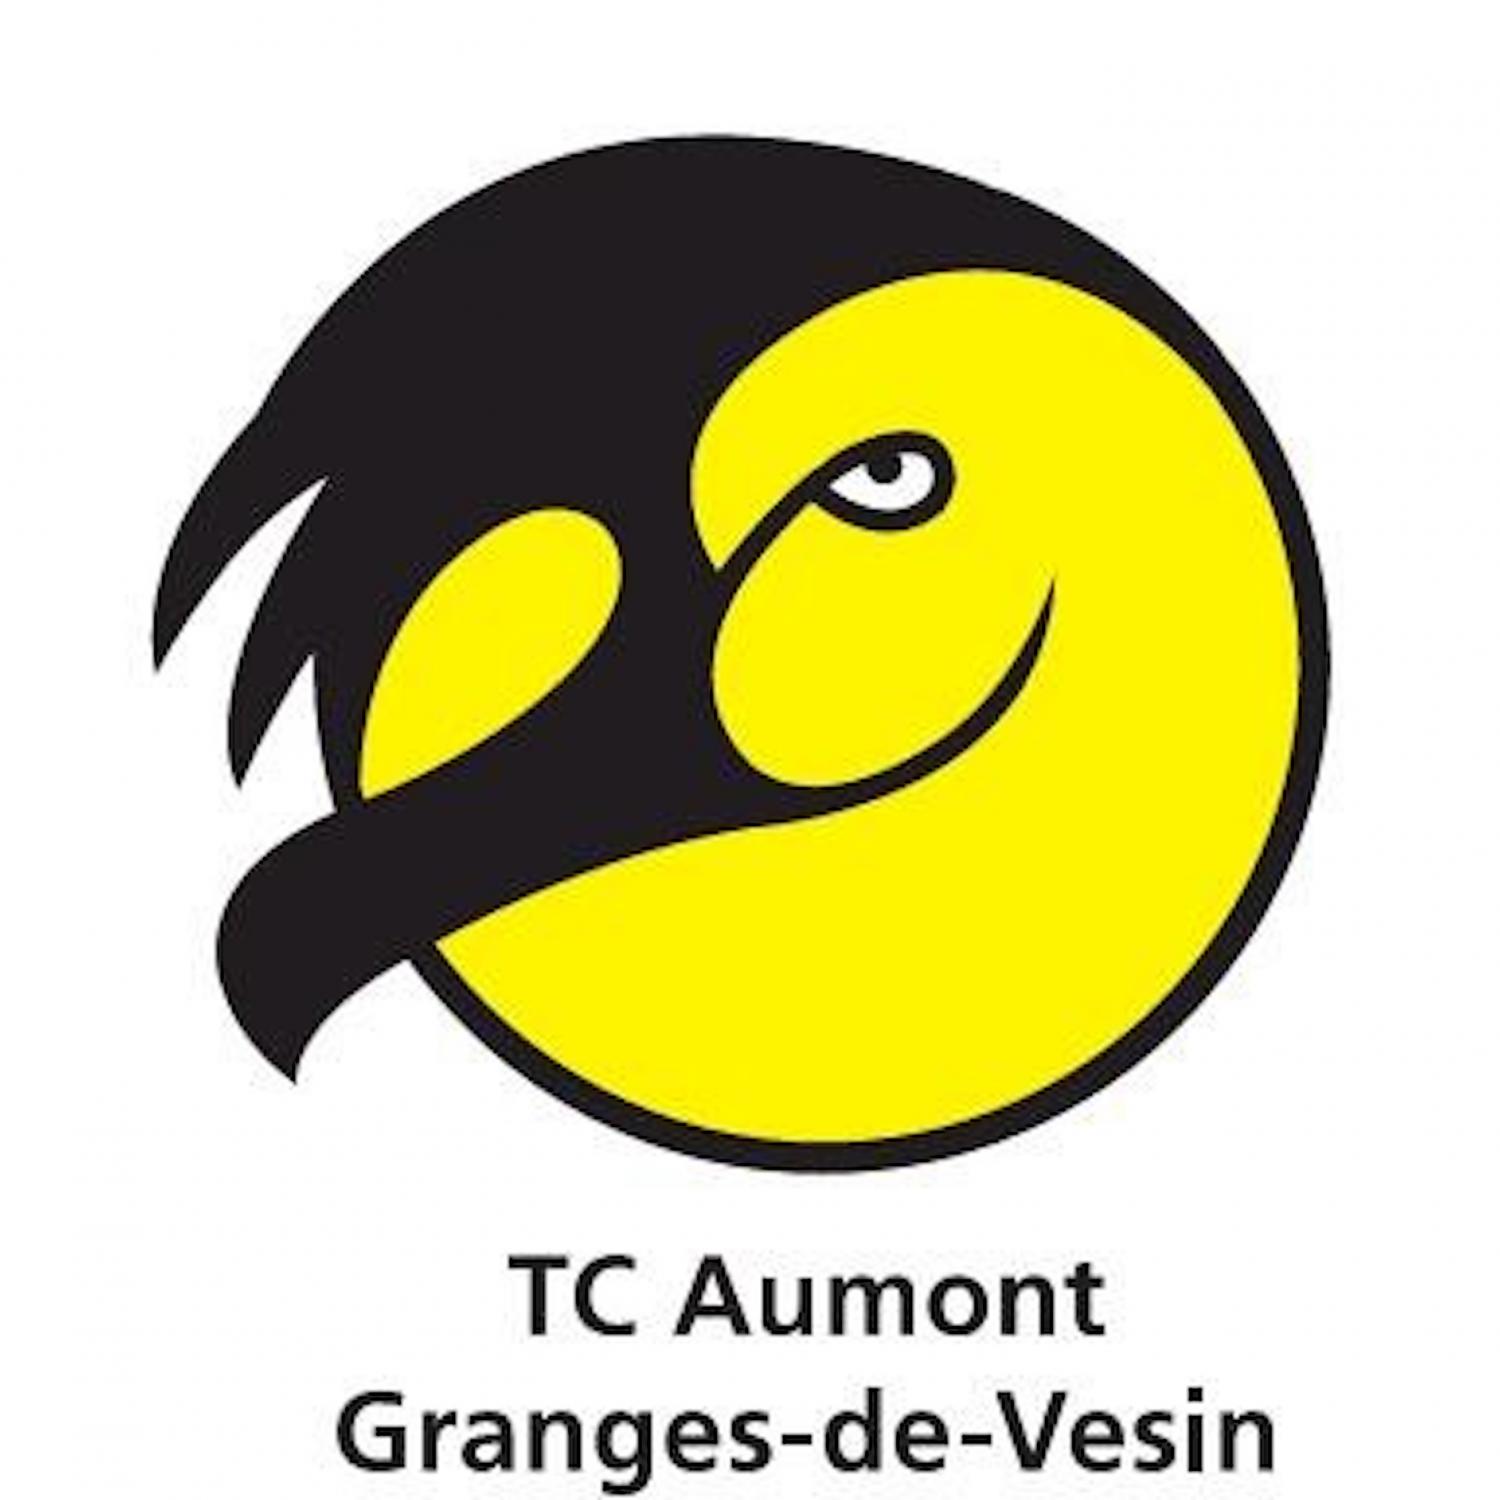 TC Aumont Granges-de-Vesin